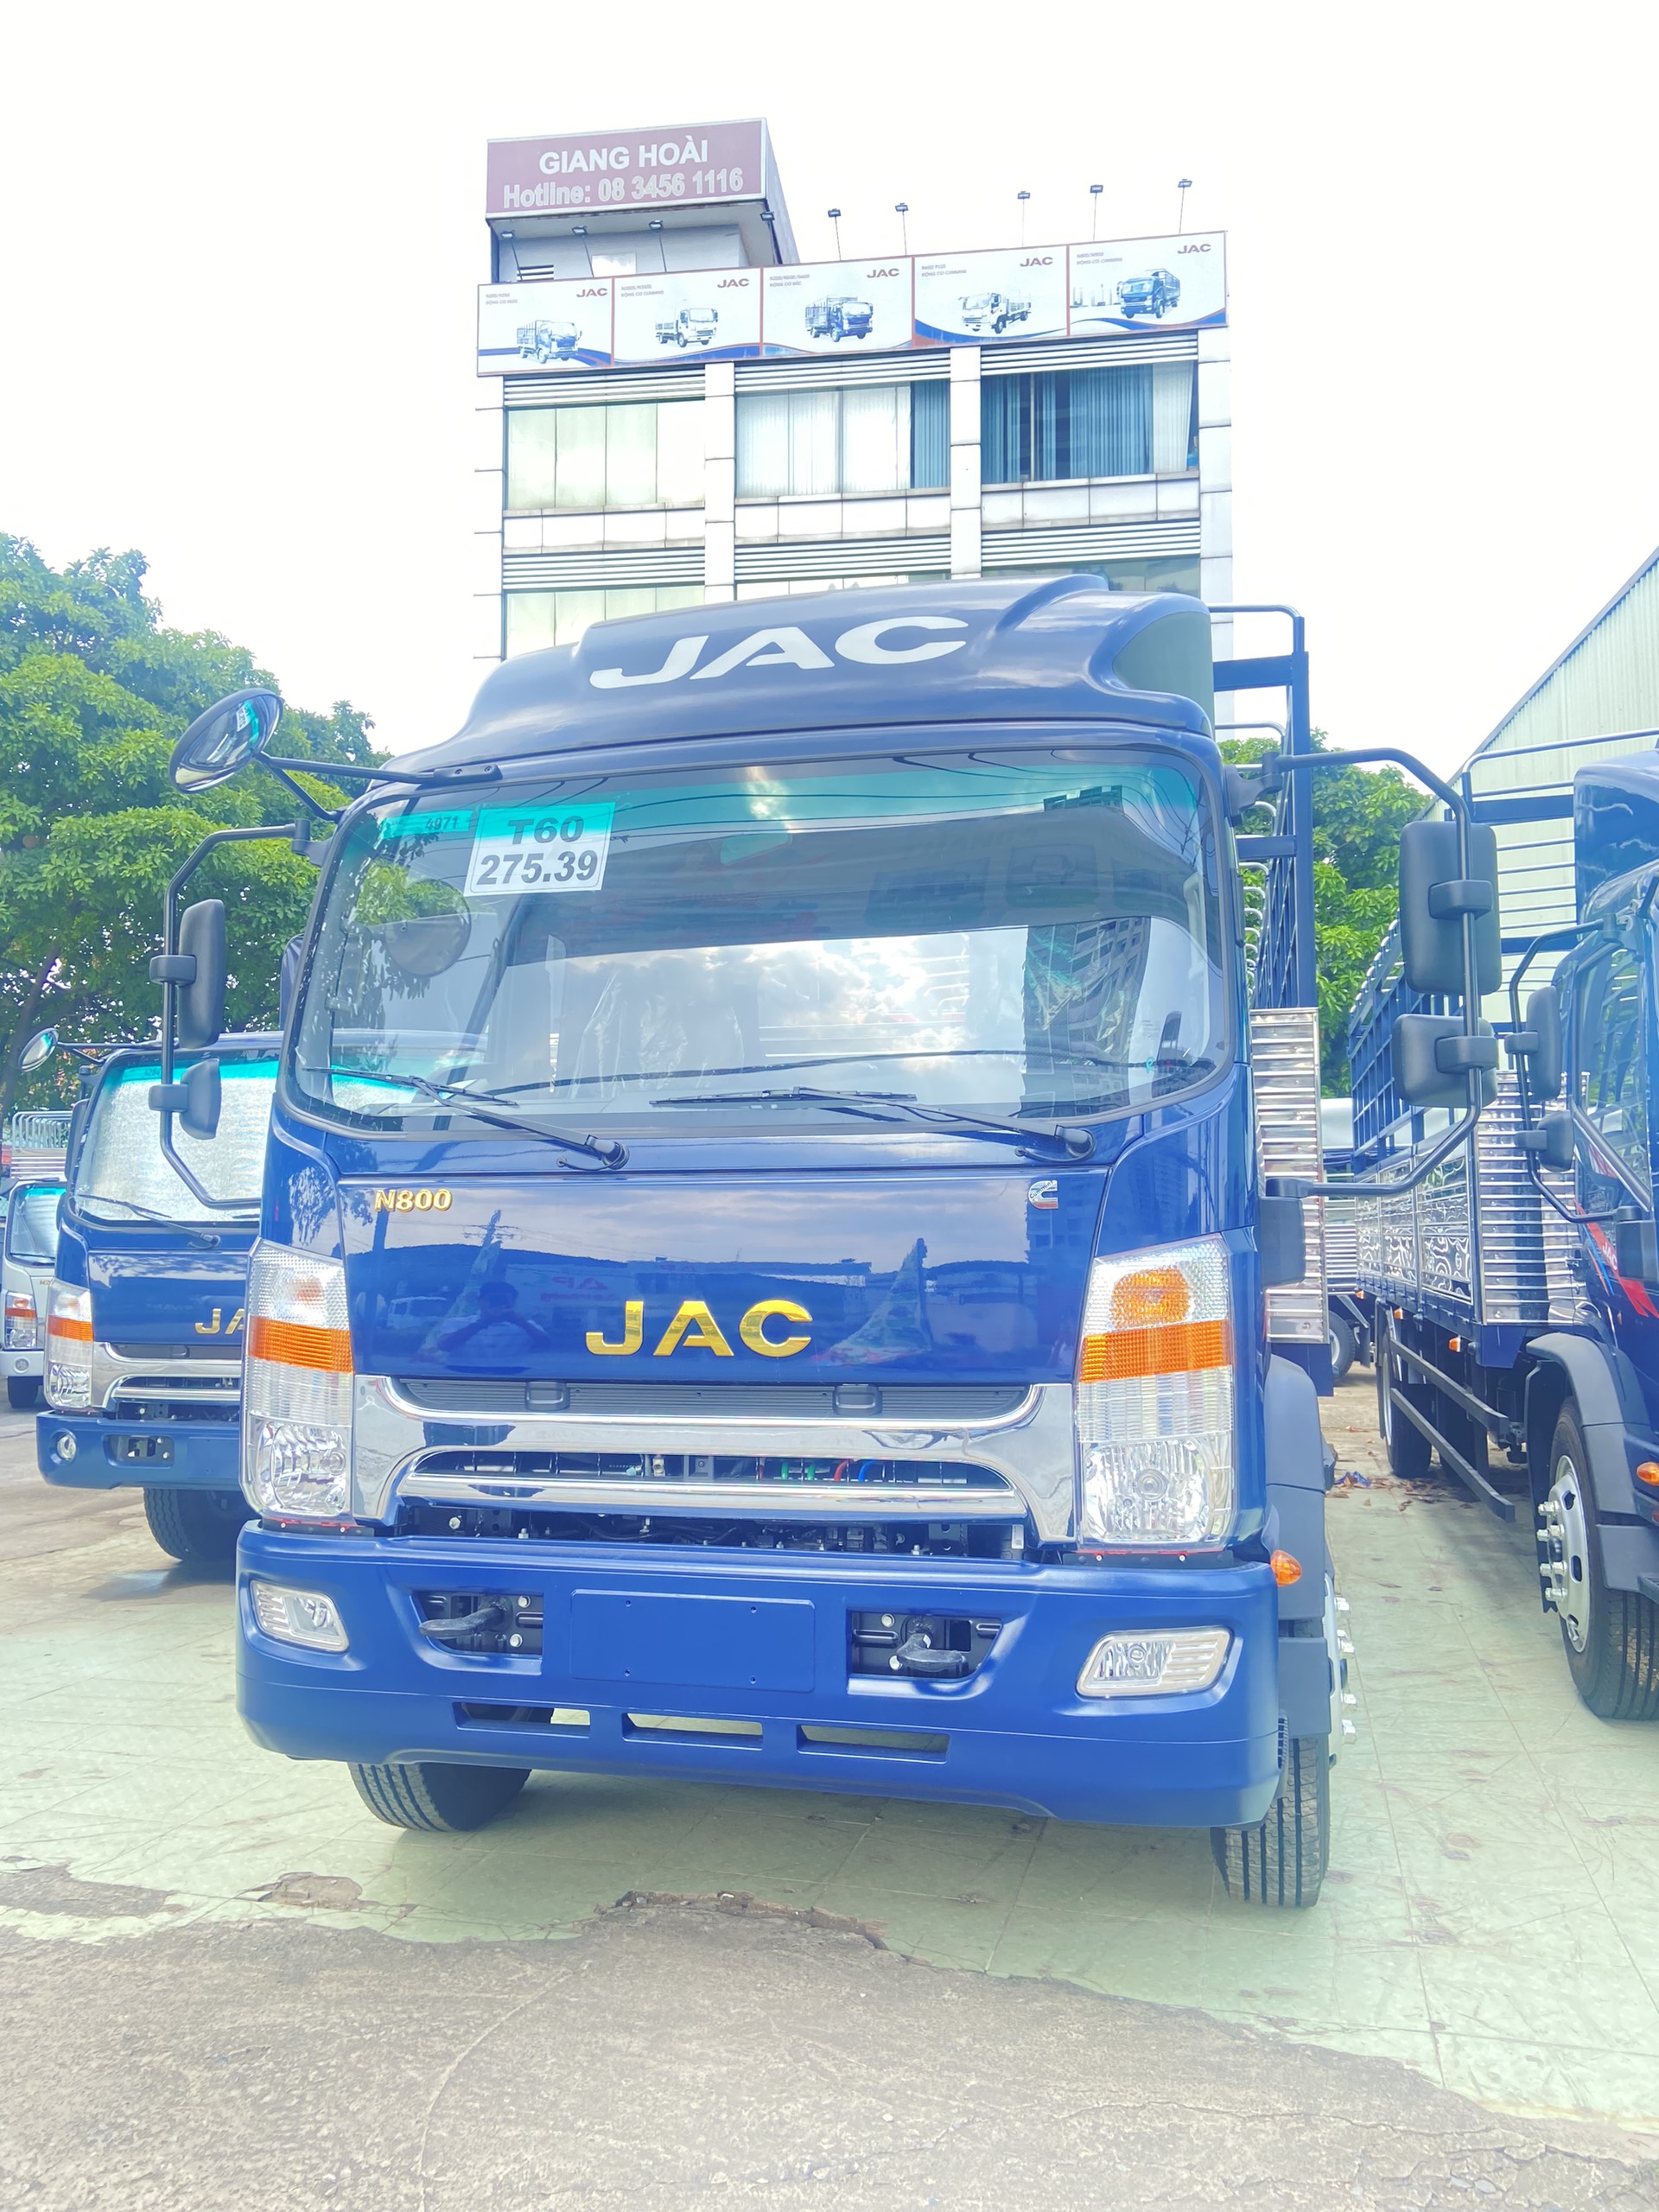  Hình ảnh: Cabin xe tải JAC N800